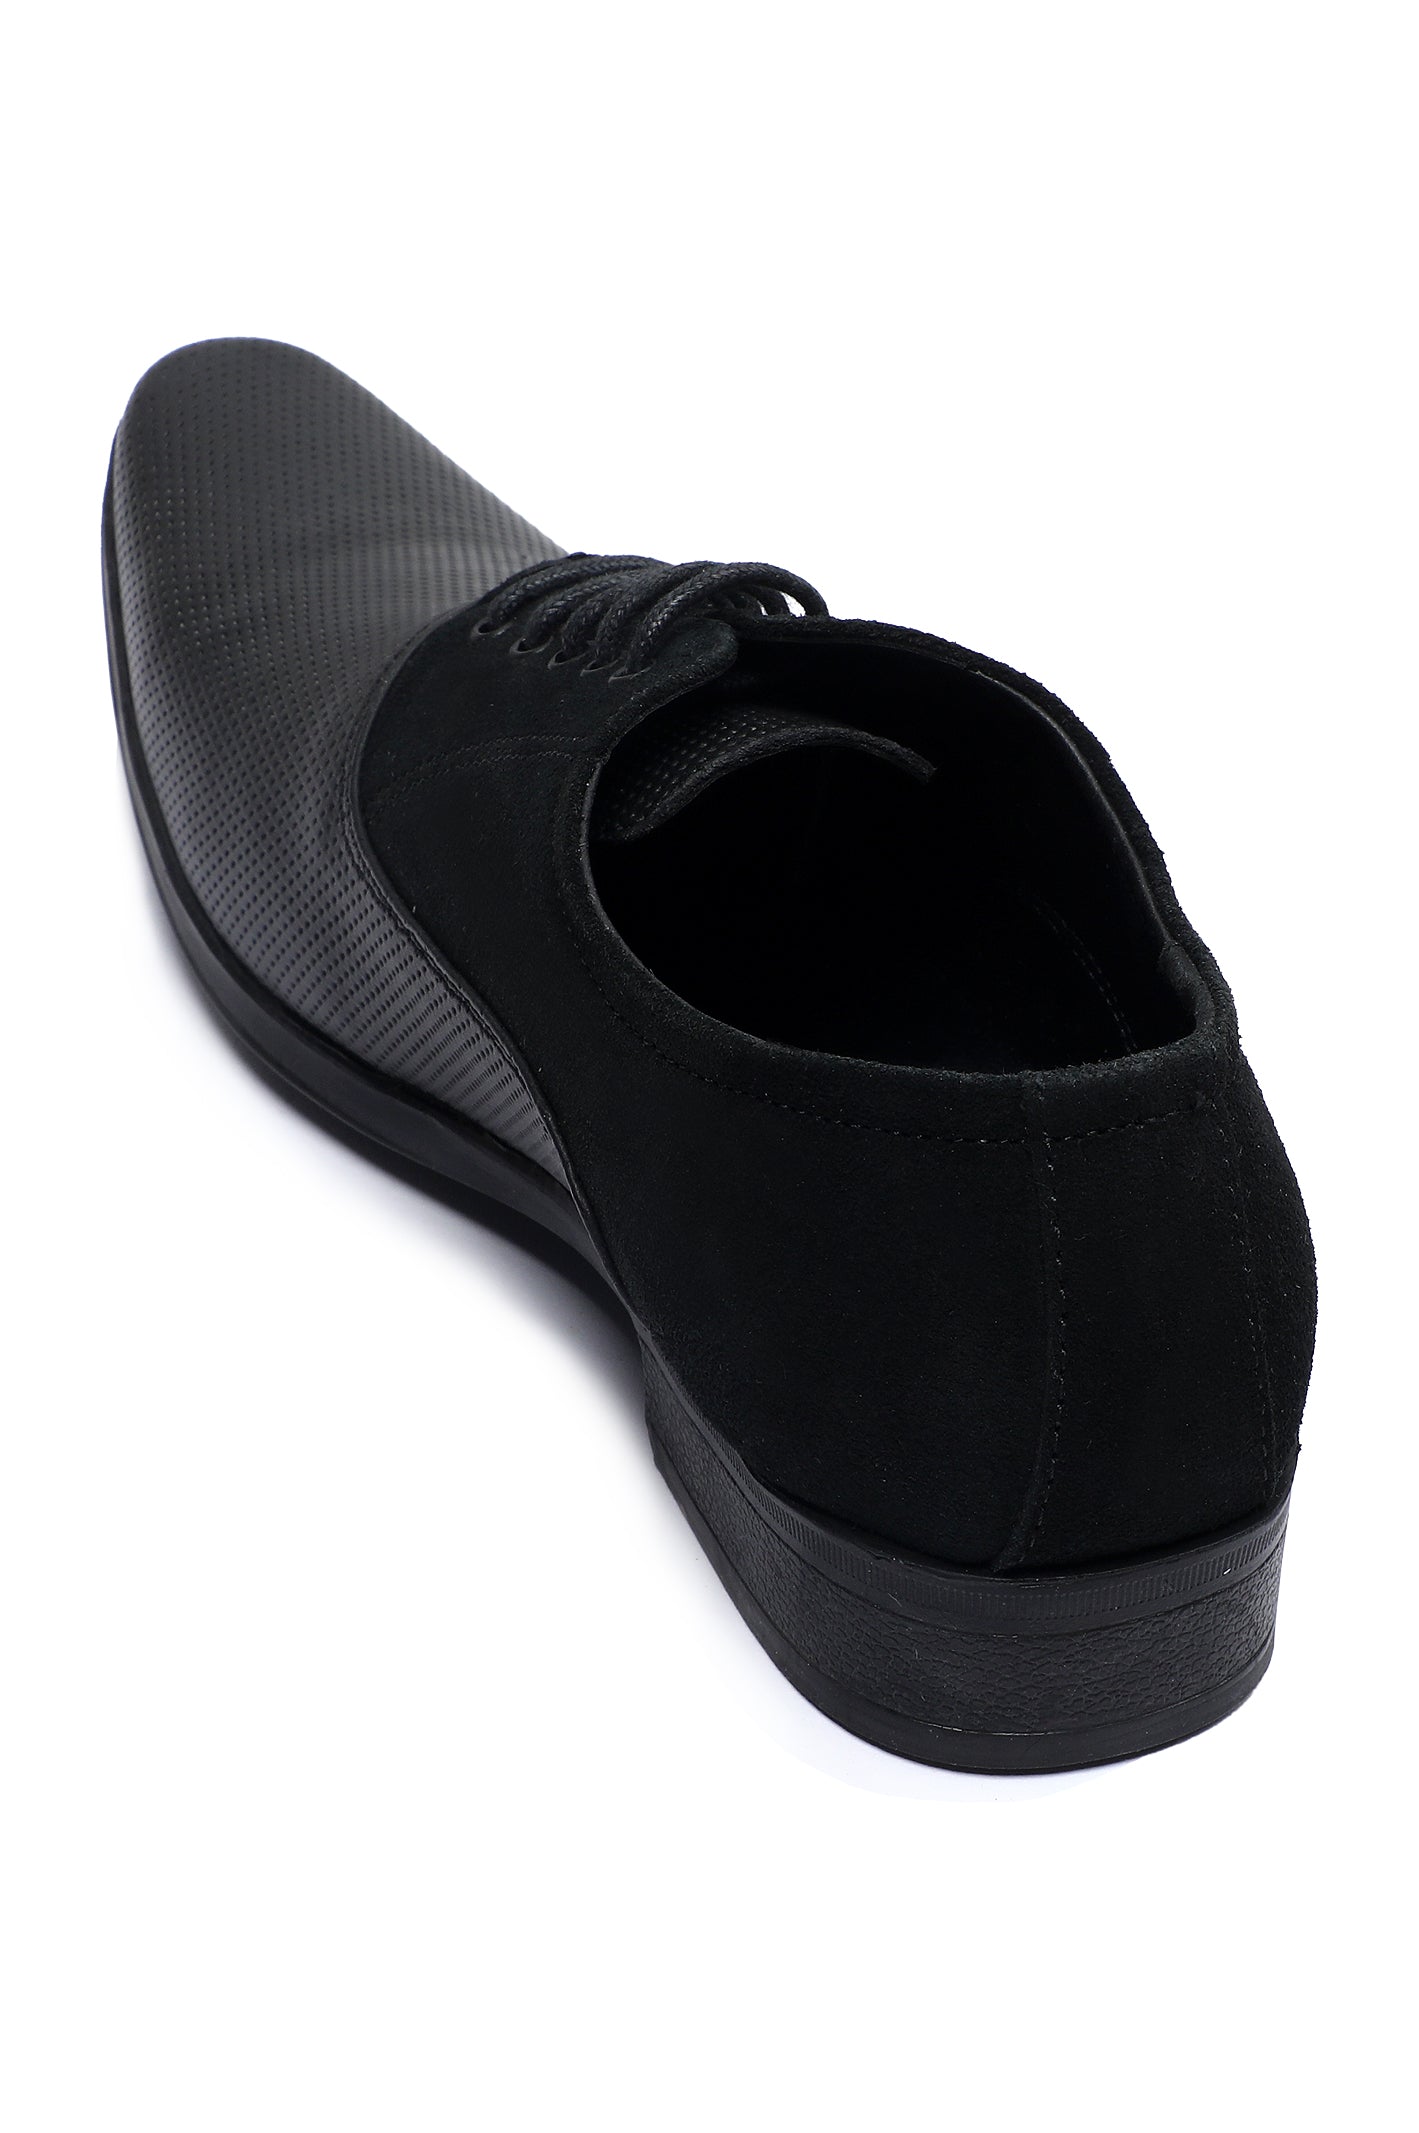 Formal Shoes For Men SKU: SMF-0249-BLACK - Diners